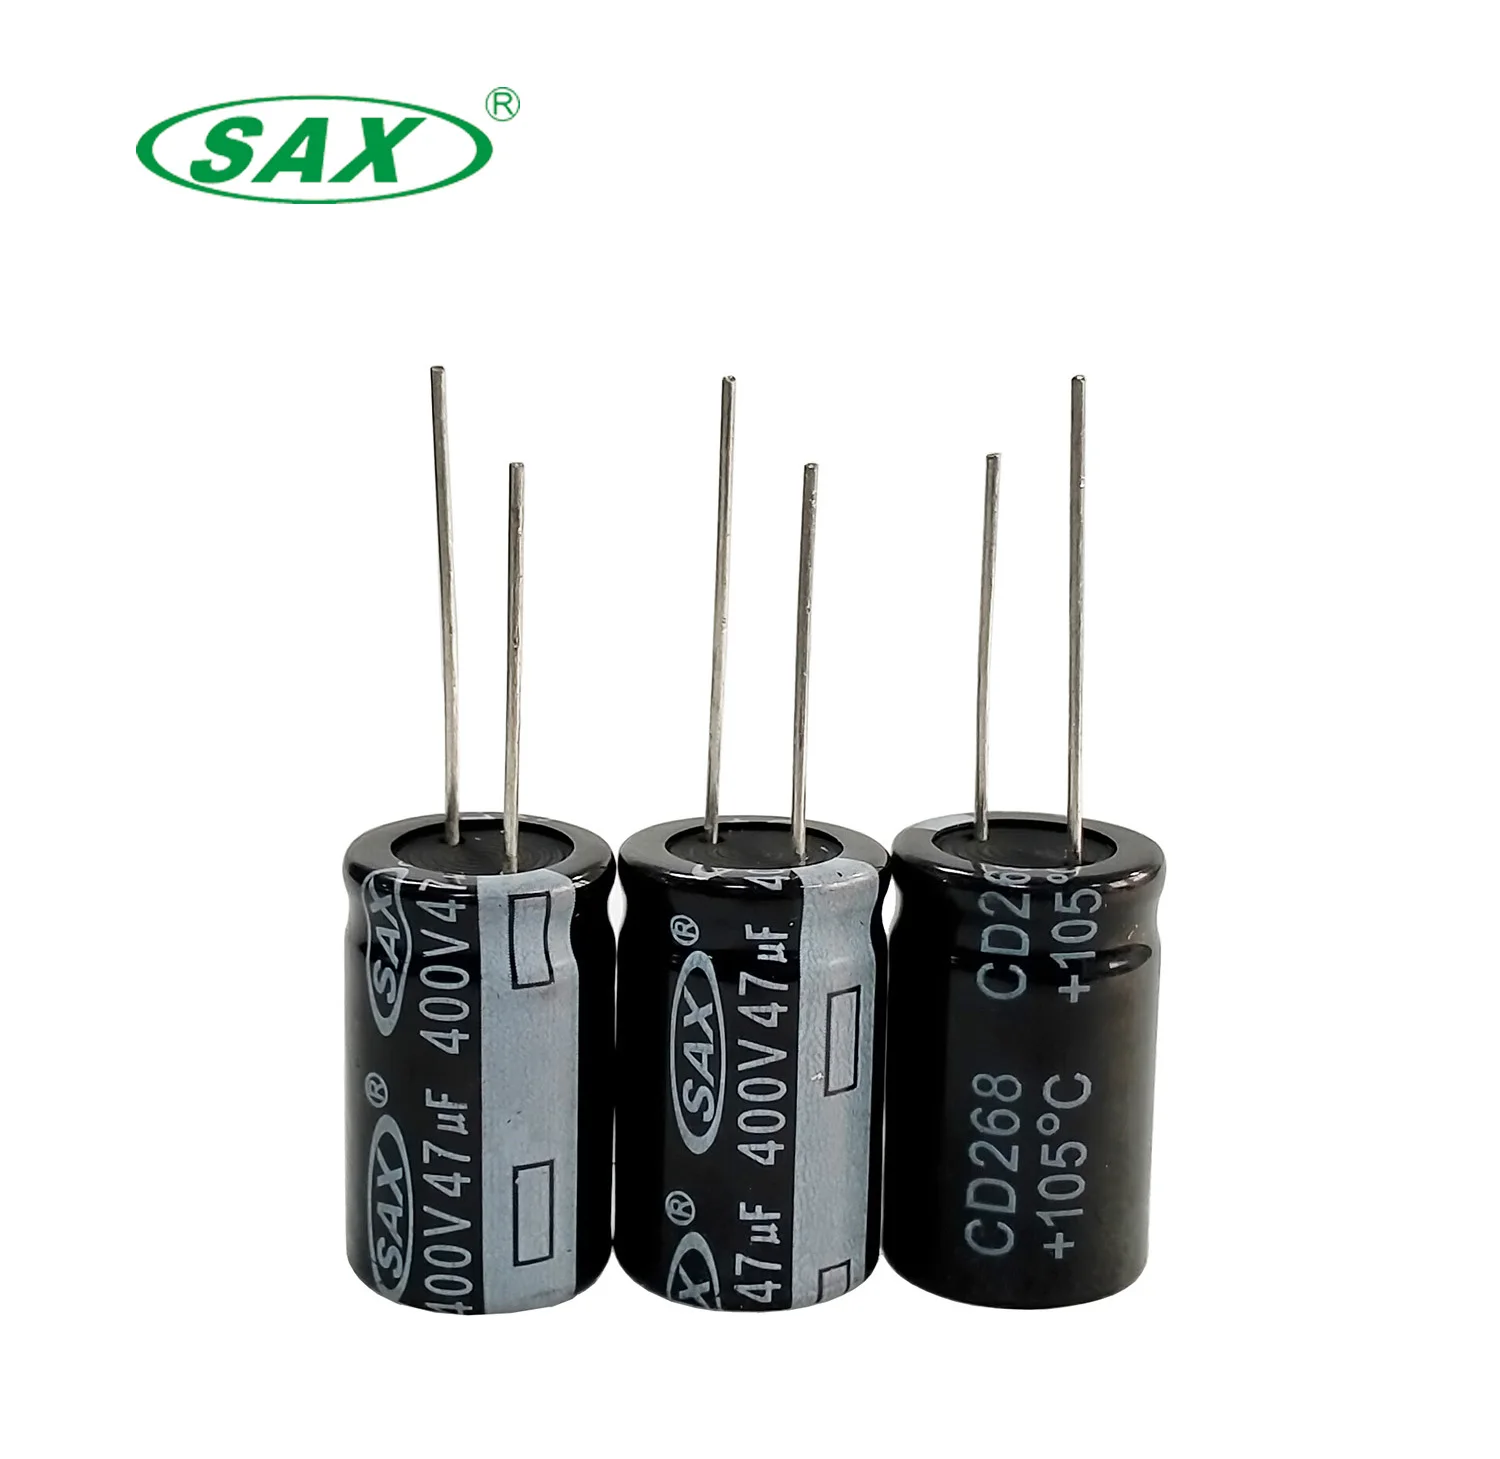 400v capacitor price aluminum capacitors